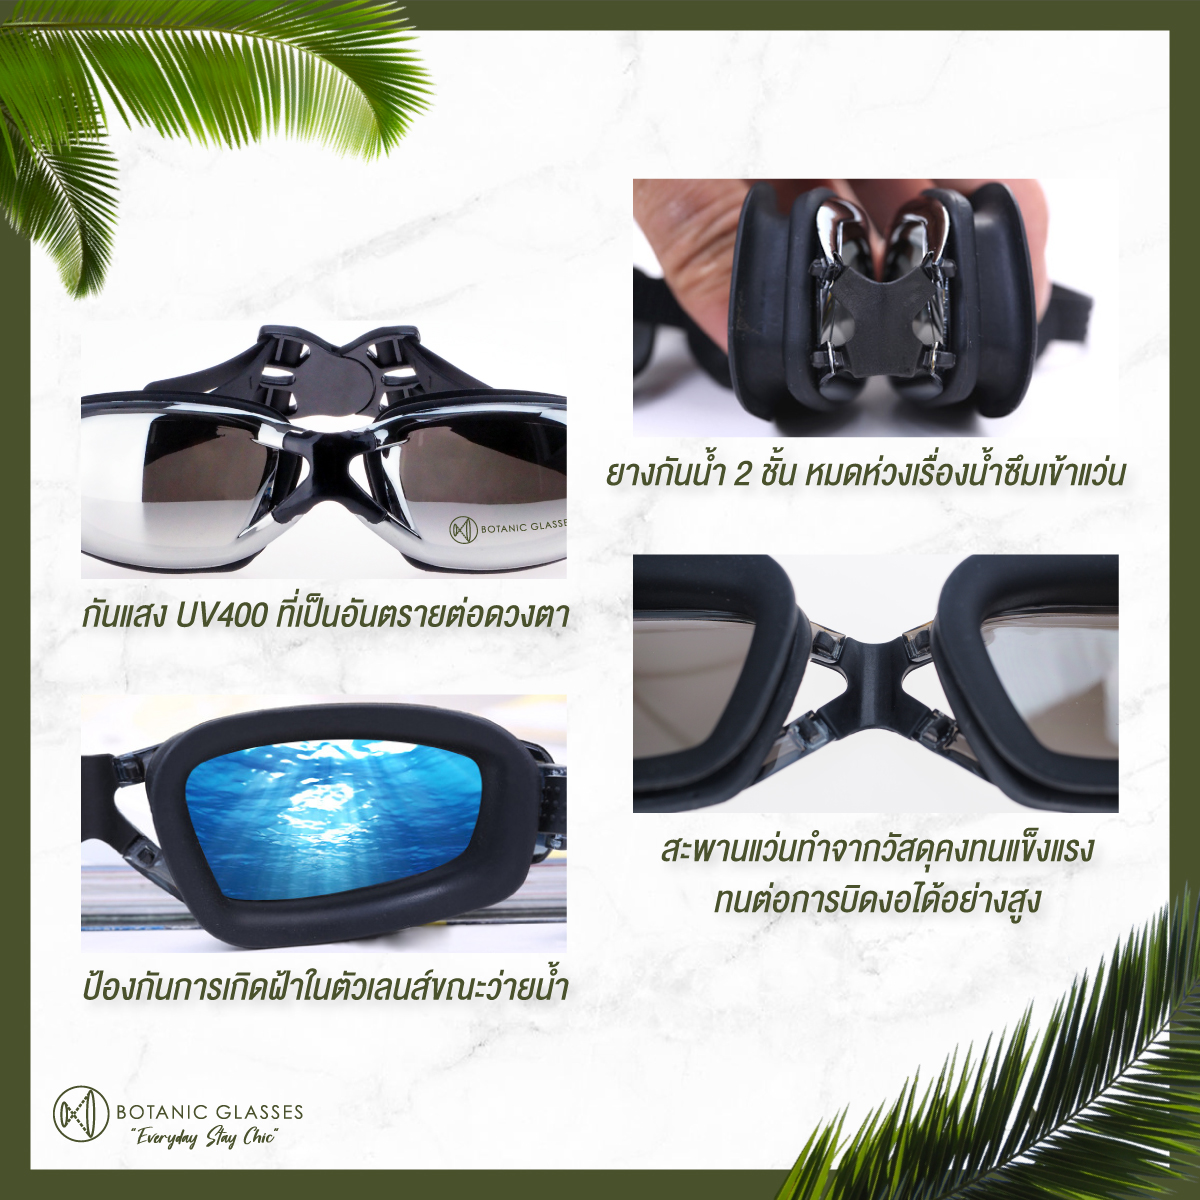 เกี่ยวกับ แว่นกันน้ำ สายตาสั้น 150 ถึง 800 แว่นว่ายน้ำ ของแท้ Botanic Glasses กัน UV 99% แว่นตาว่ายน้ำ Free กล่องแว่น